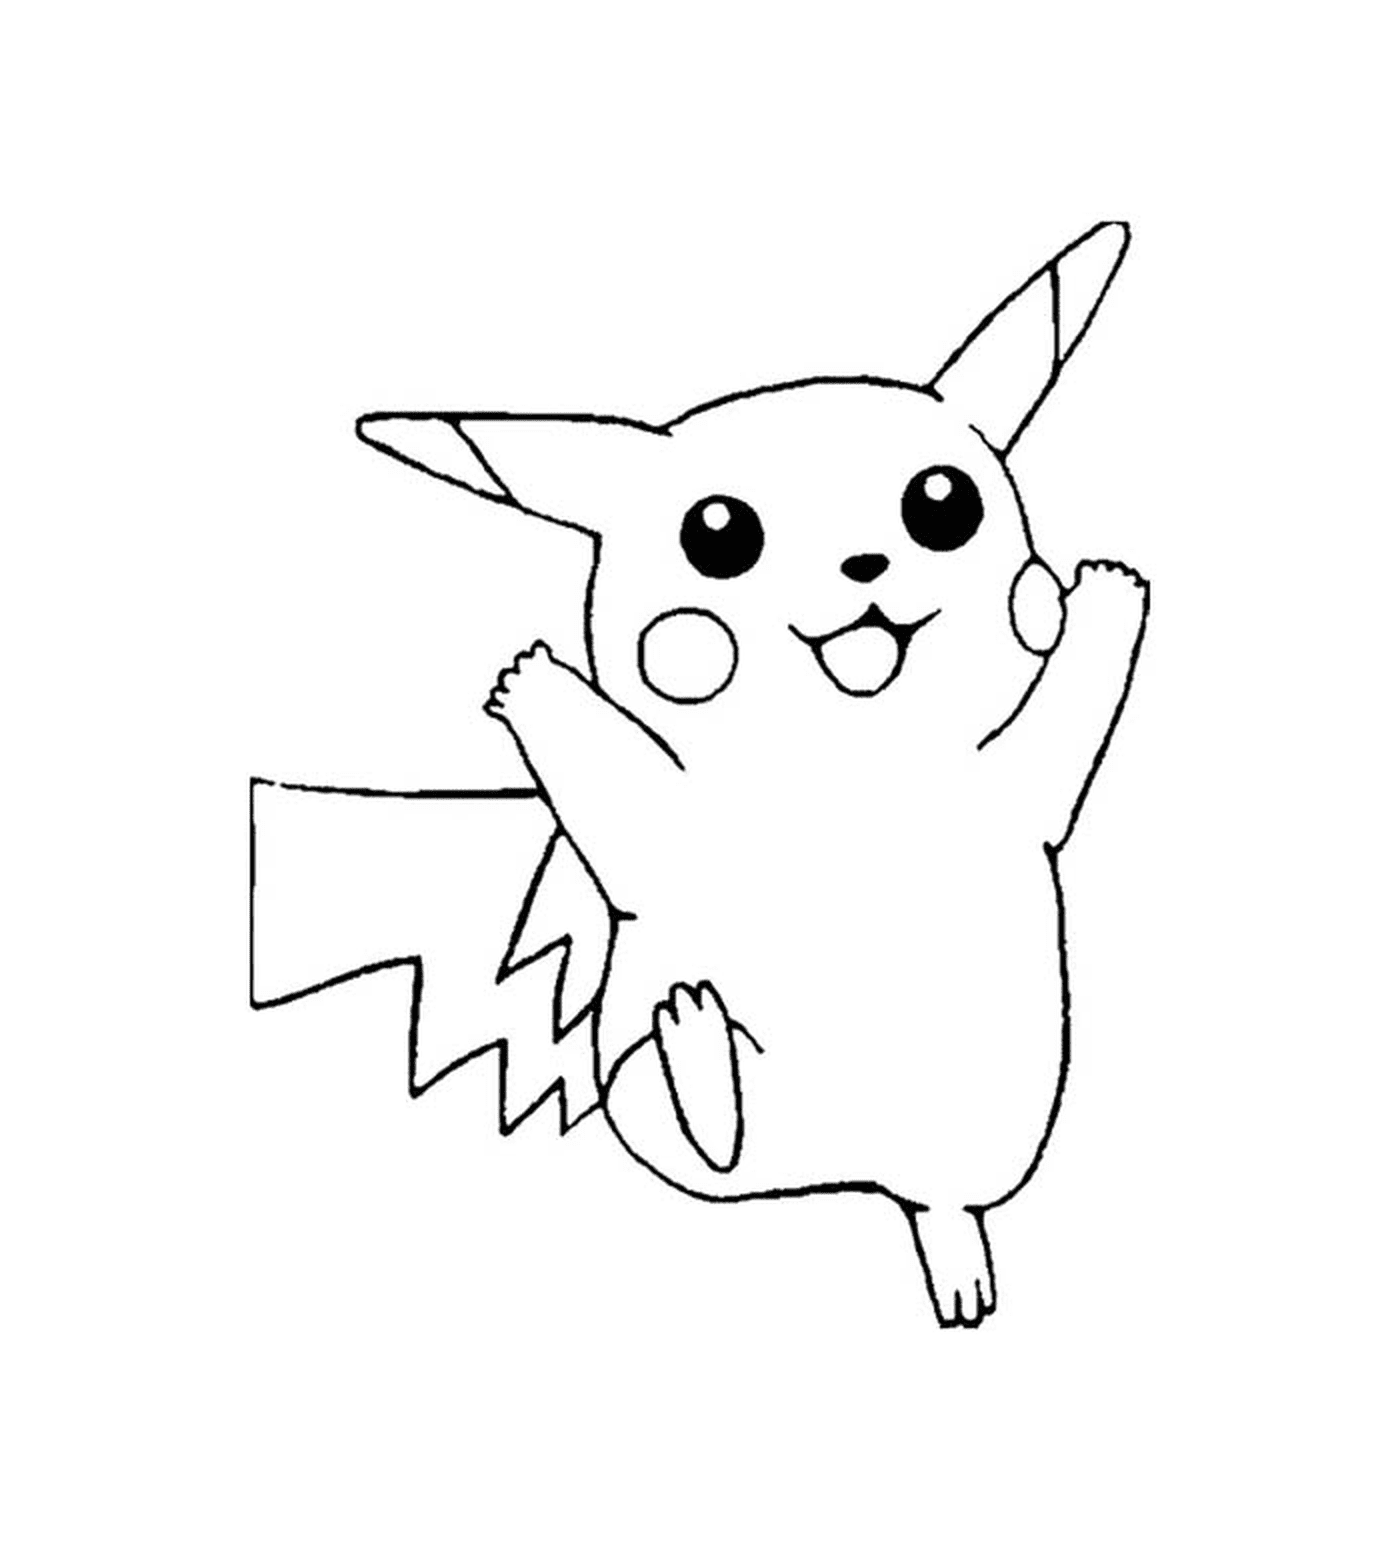  Pikachu, niedlich und elektrisch 